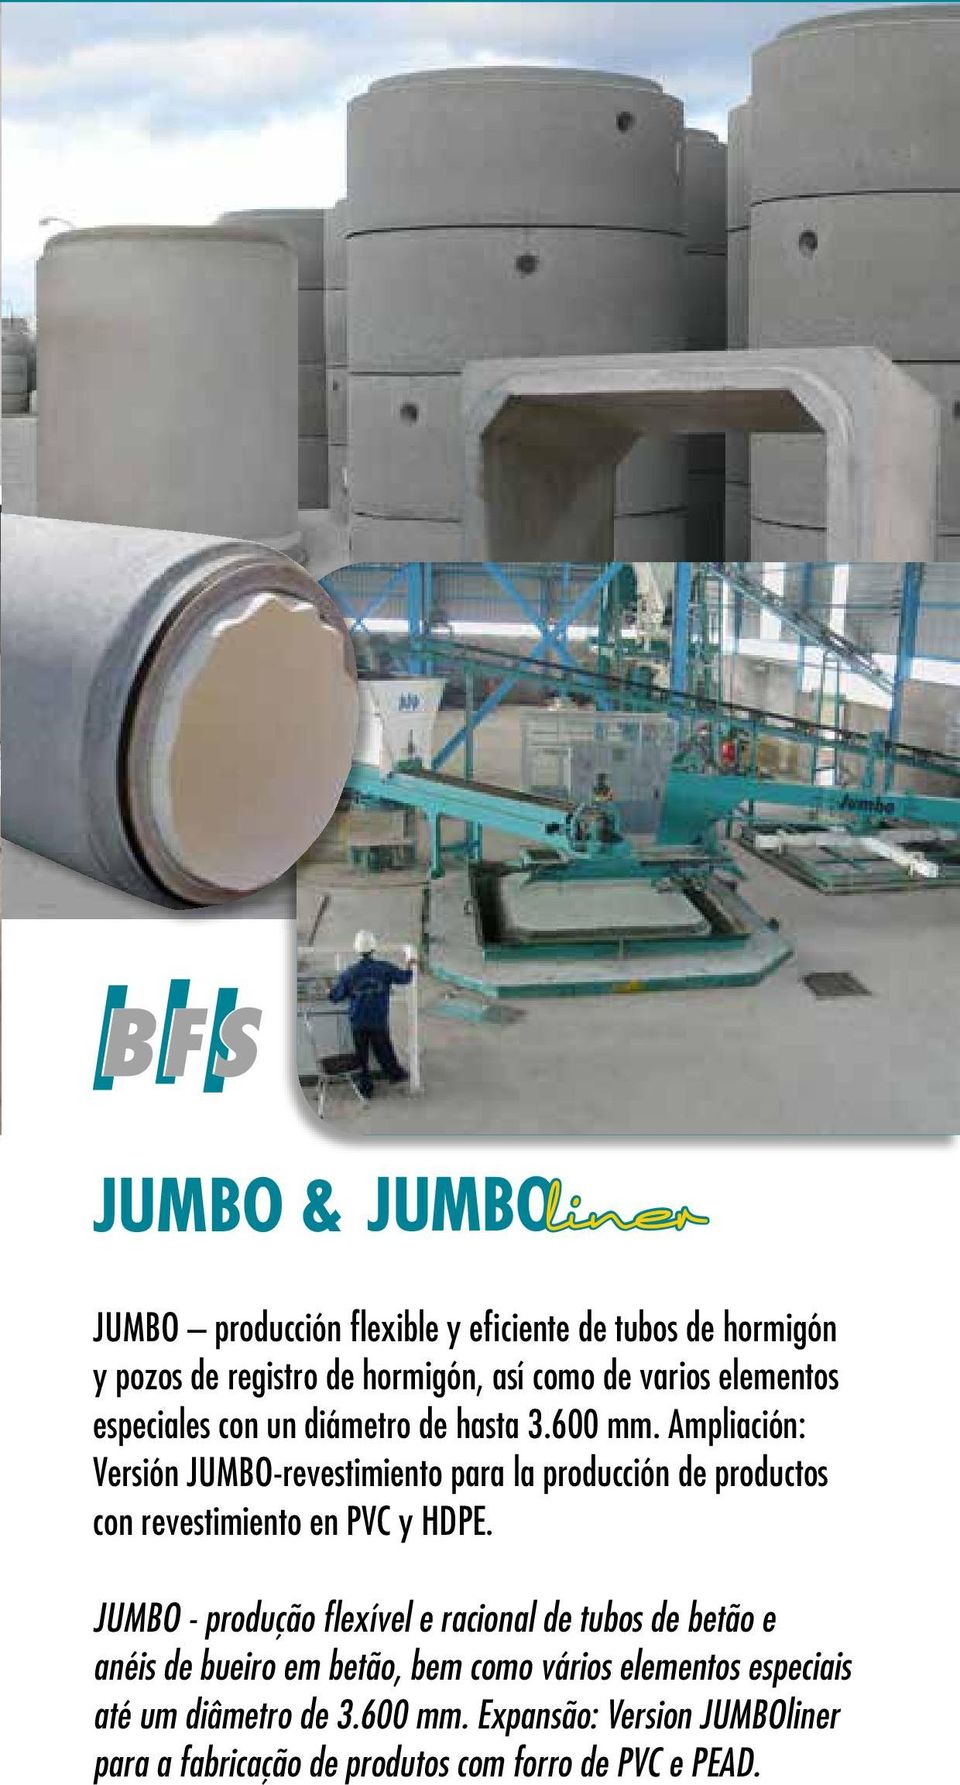 Ampliación: Versión JUMBO-revestimiento para la producción de productos con revestimiento en PVC y HDPE.